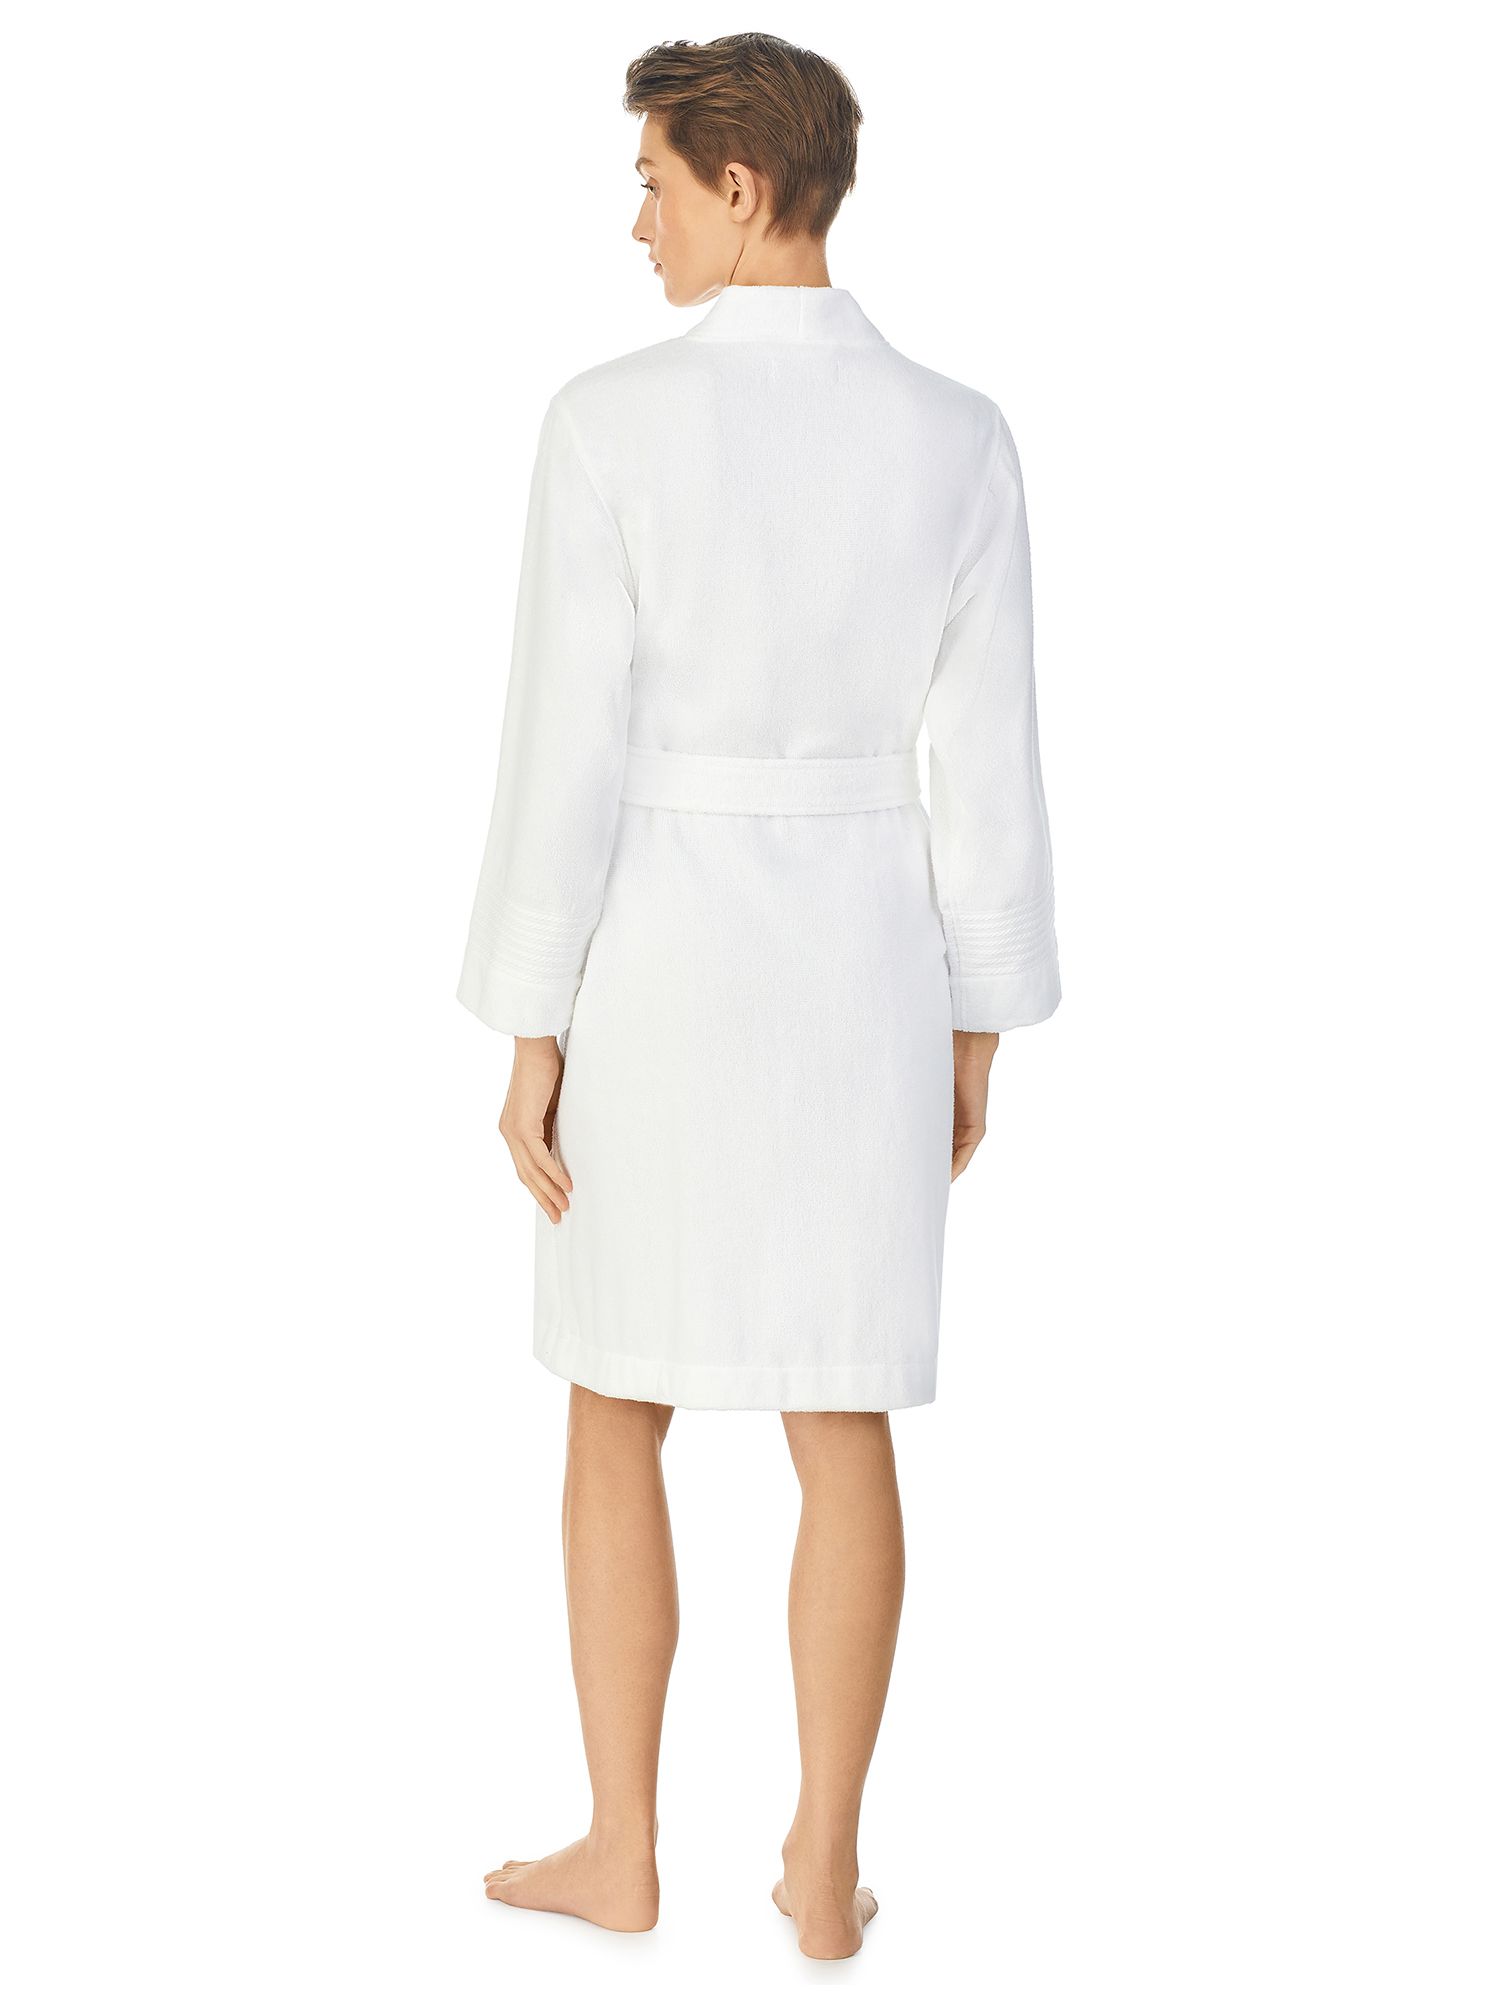 Lauren Ralph Lauren Greenwich Towelling Robe, White, S